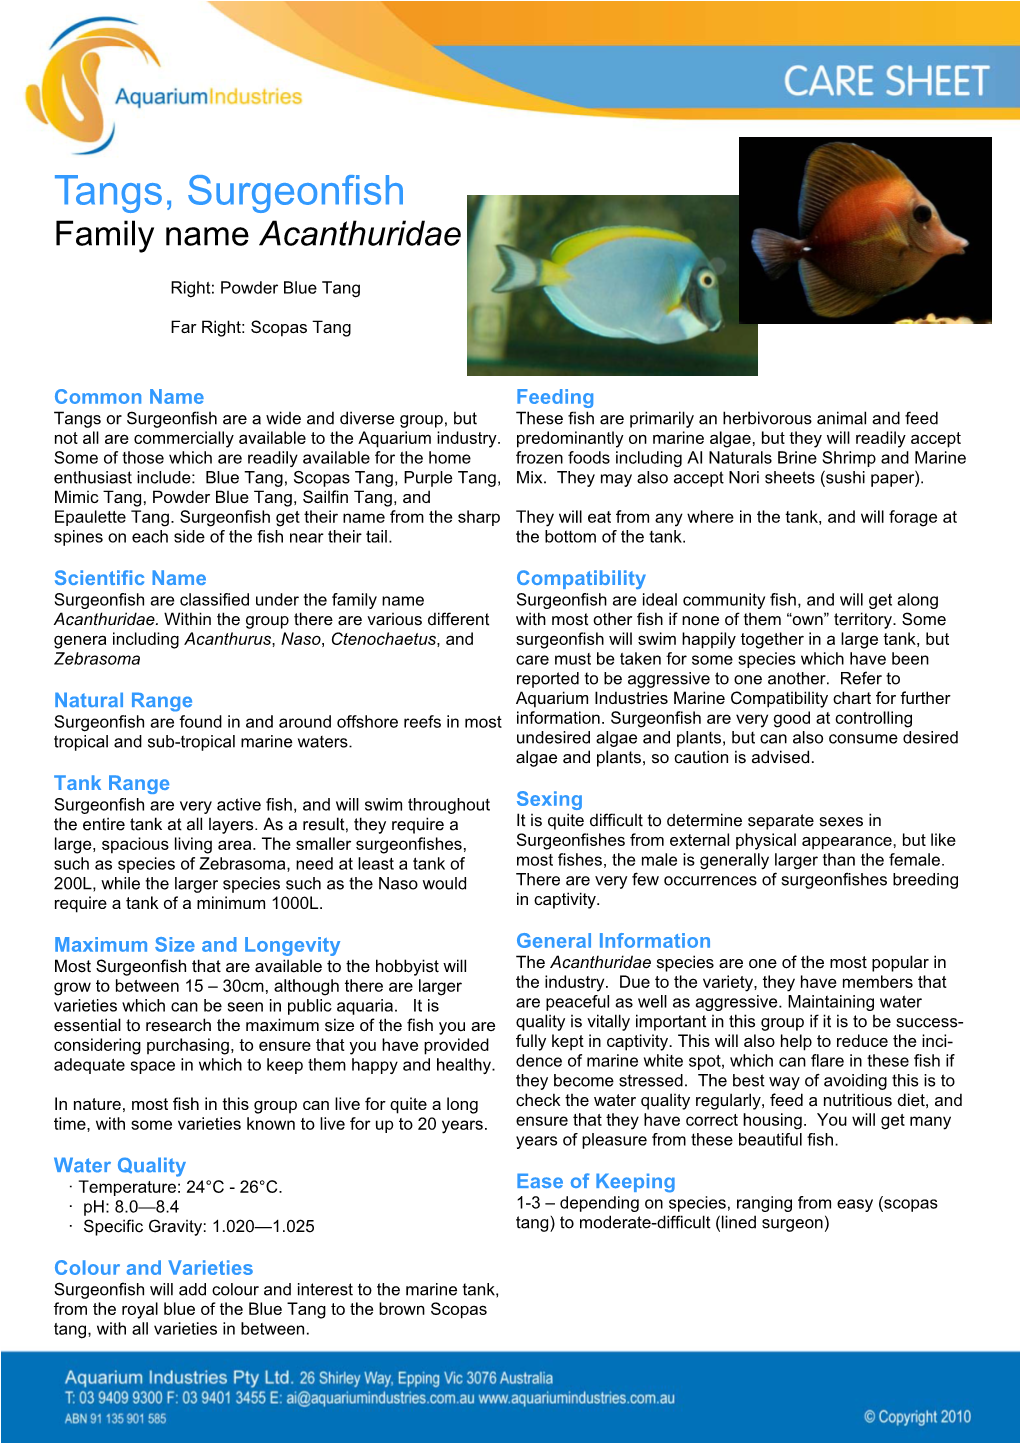 Tangs, Surgeonfish Family Name Acanthuridae